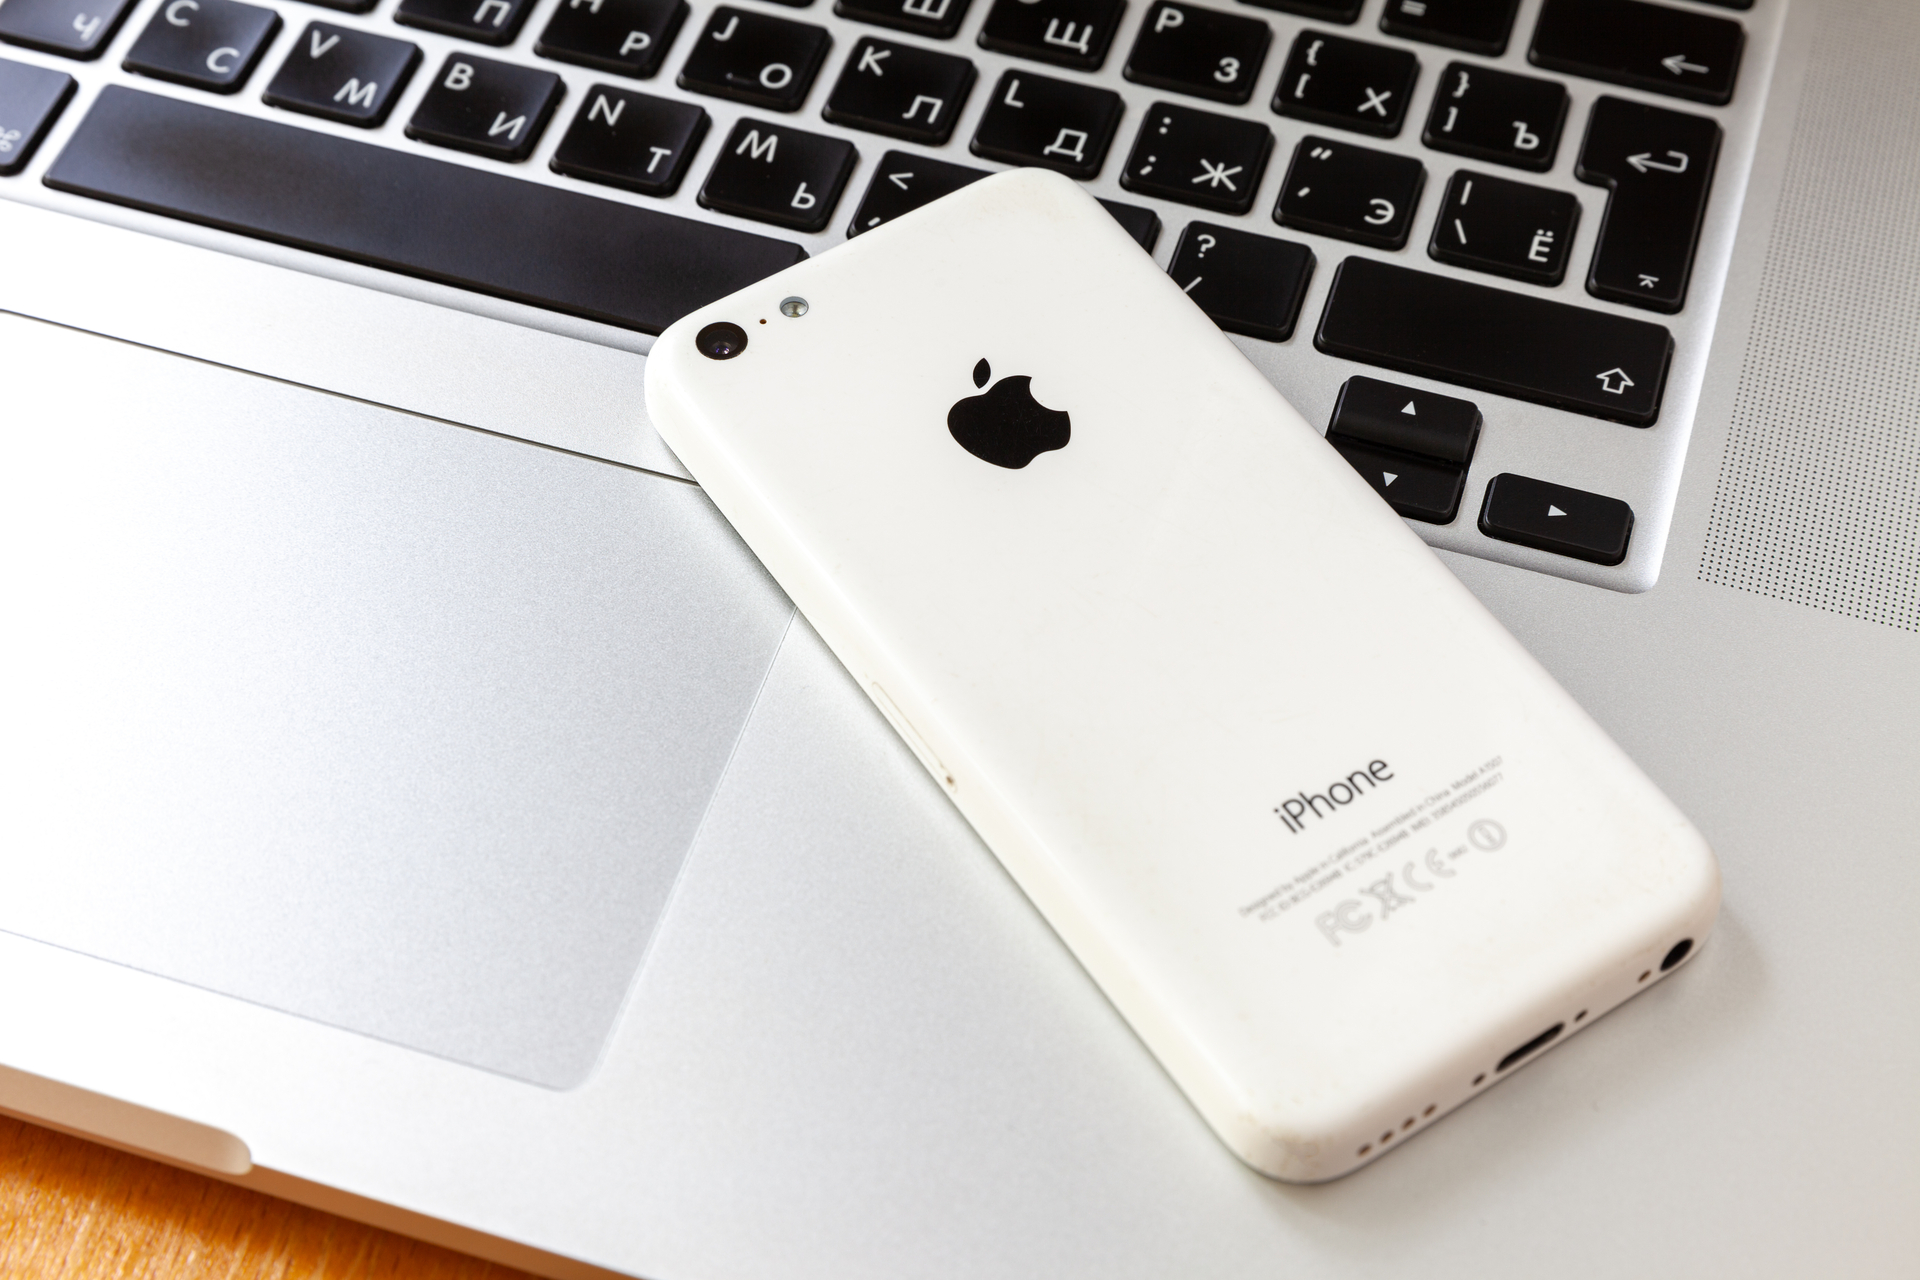 Apple alerte sur 3 nouvelles vulnérabilités qui touchent les iPhone, Mac et iPad